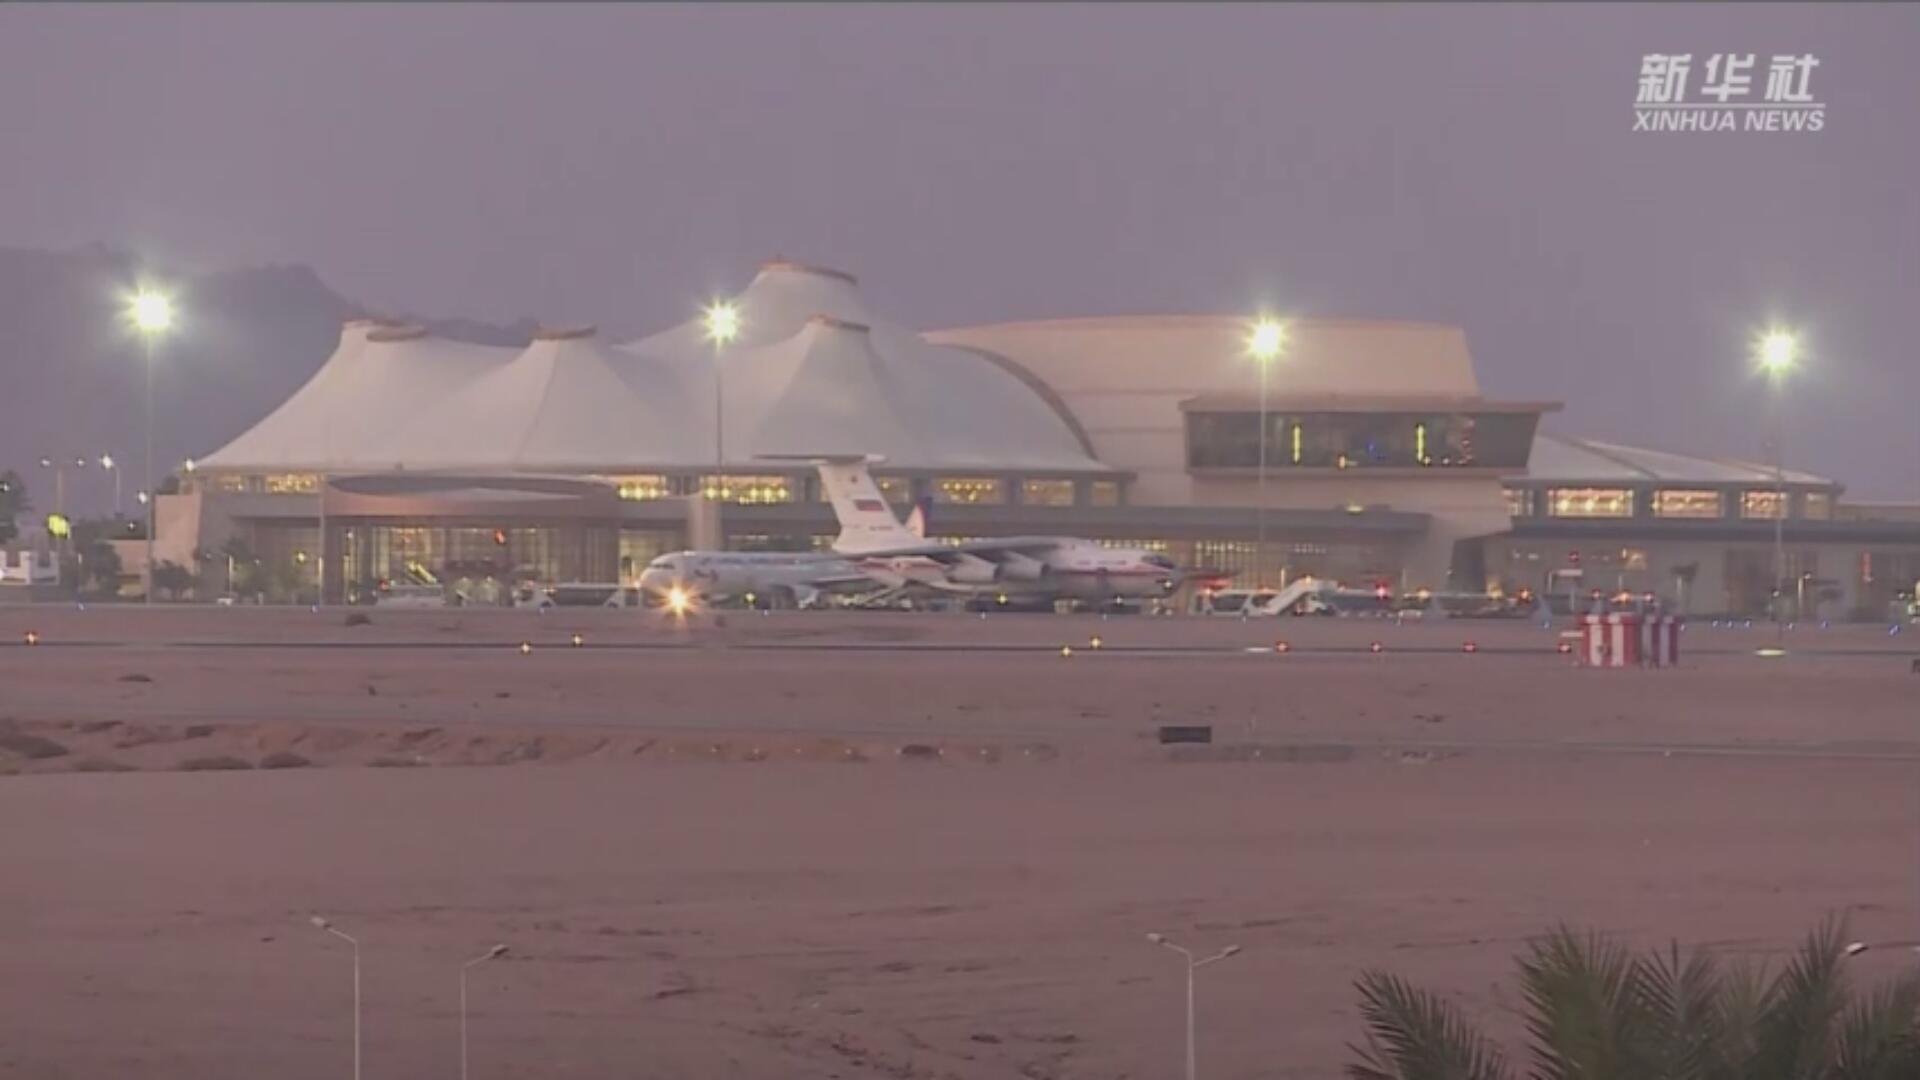 فيديو: روسيا تستأنف رحلات الطيران السياحي إلى مصر في الأيام القادمة